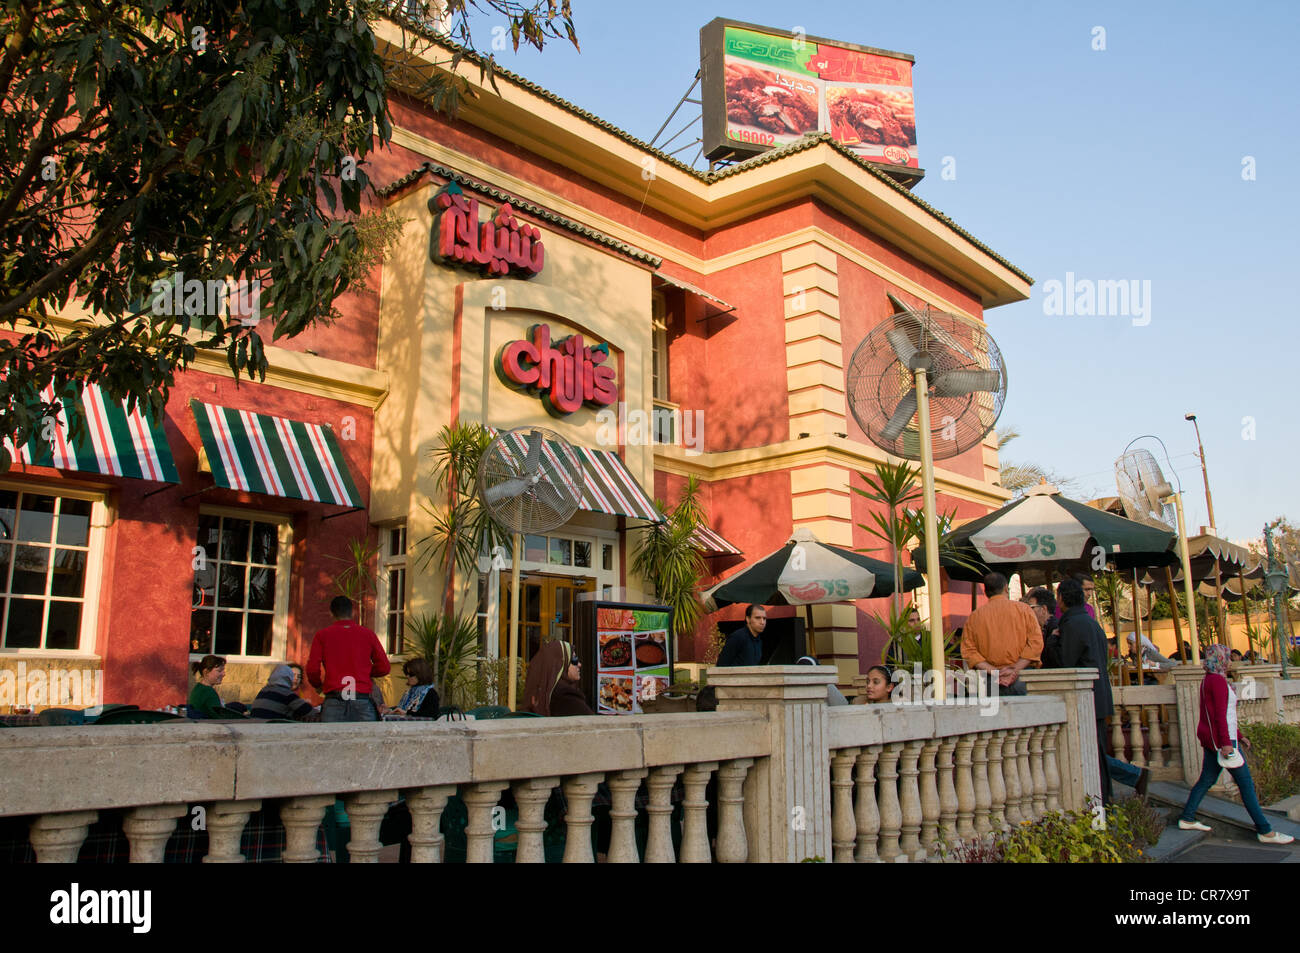 La chaîne de restaurants du Chili a une succursale dans le secteur haut de gamme d'Heliopolis Cairo Egypte Banque D'Images